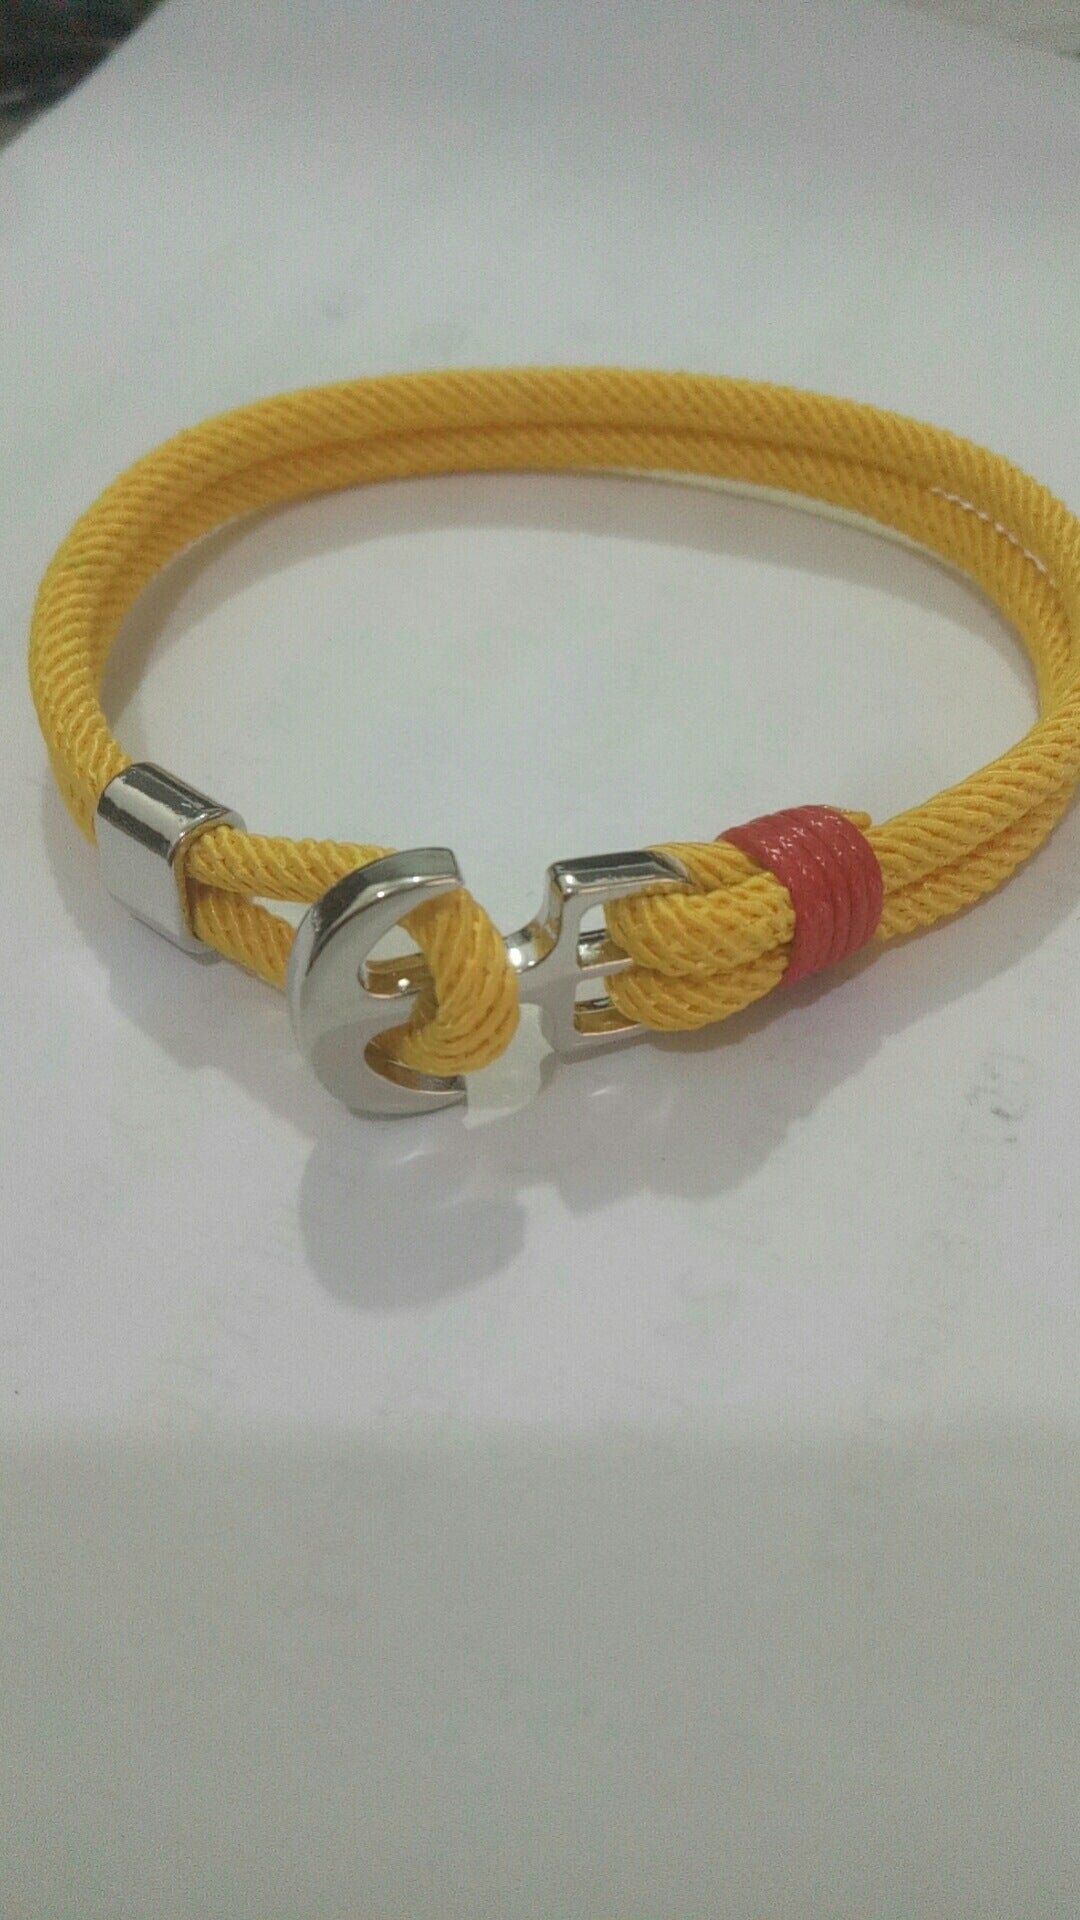 Bracelets à main en corde rouge, ancre de bateau de la marine, vie Milan